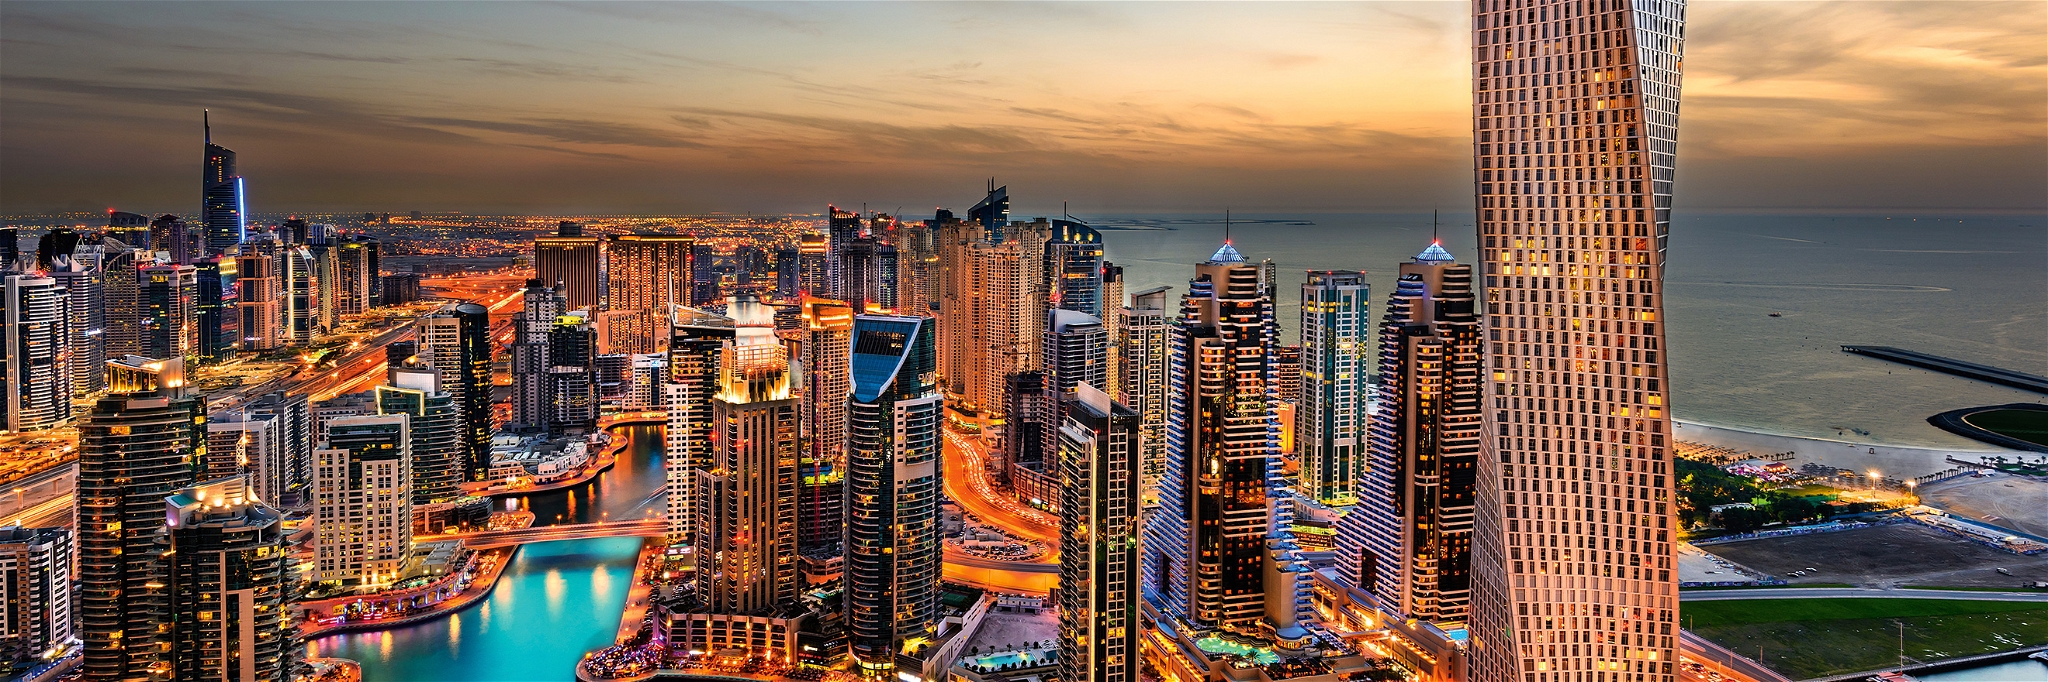 Übermorgenland: der Hafen und die beeindruckende Skyline von Dubai.